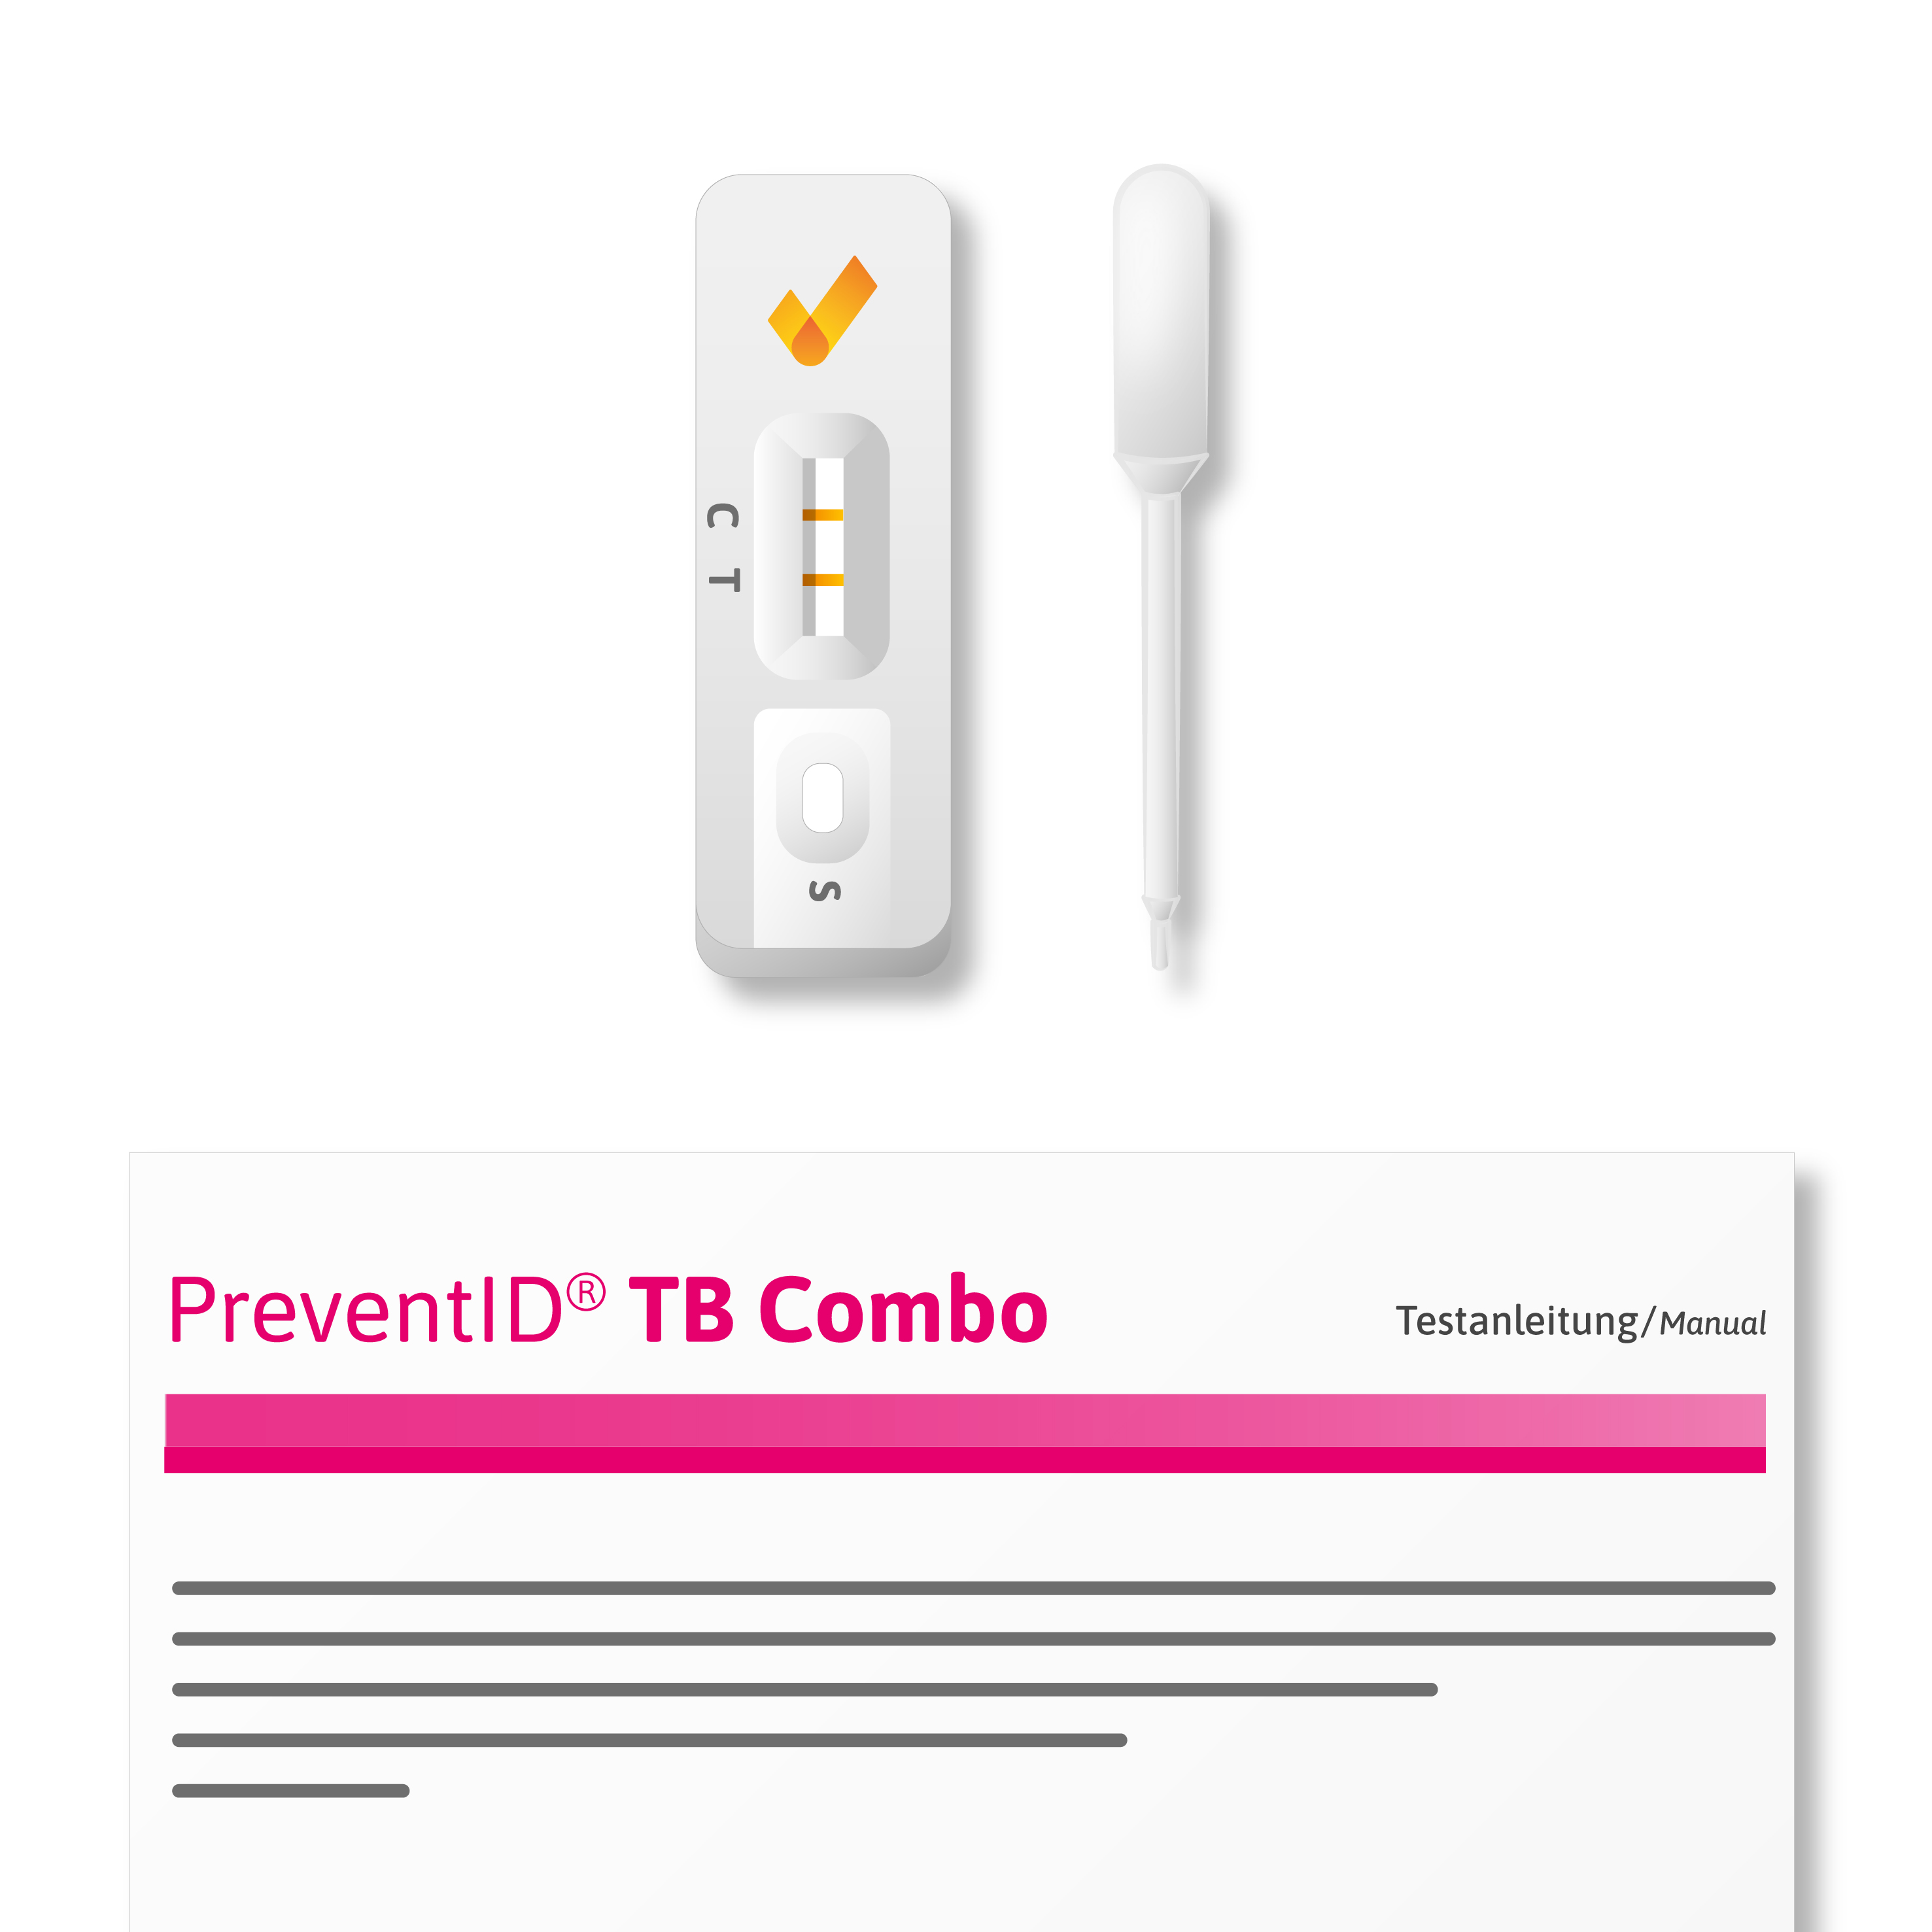 PreventID TB Combo Components